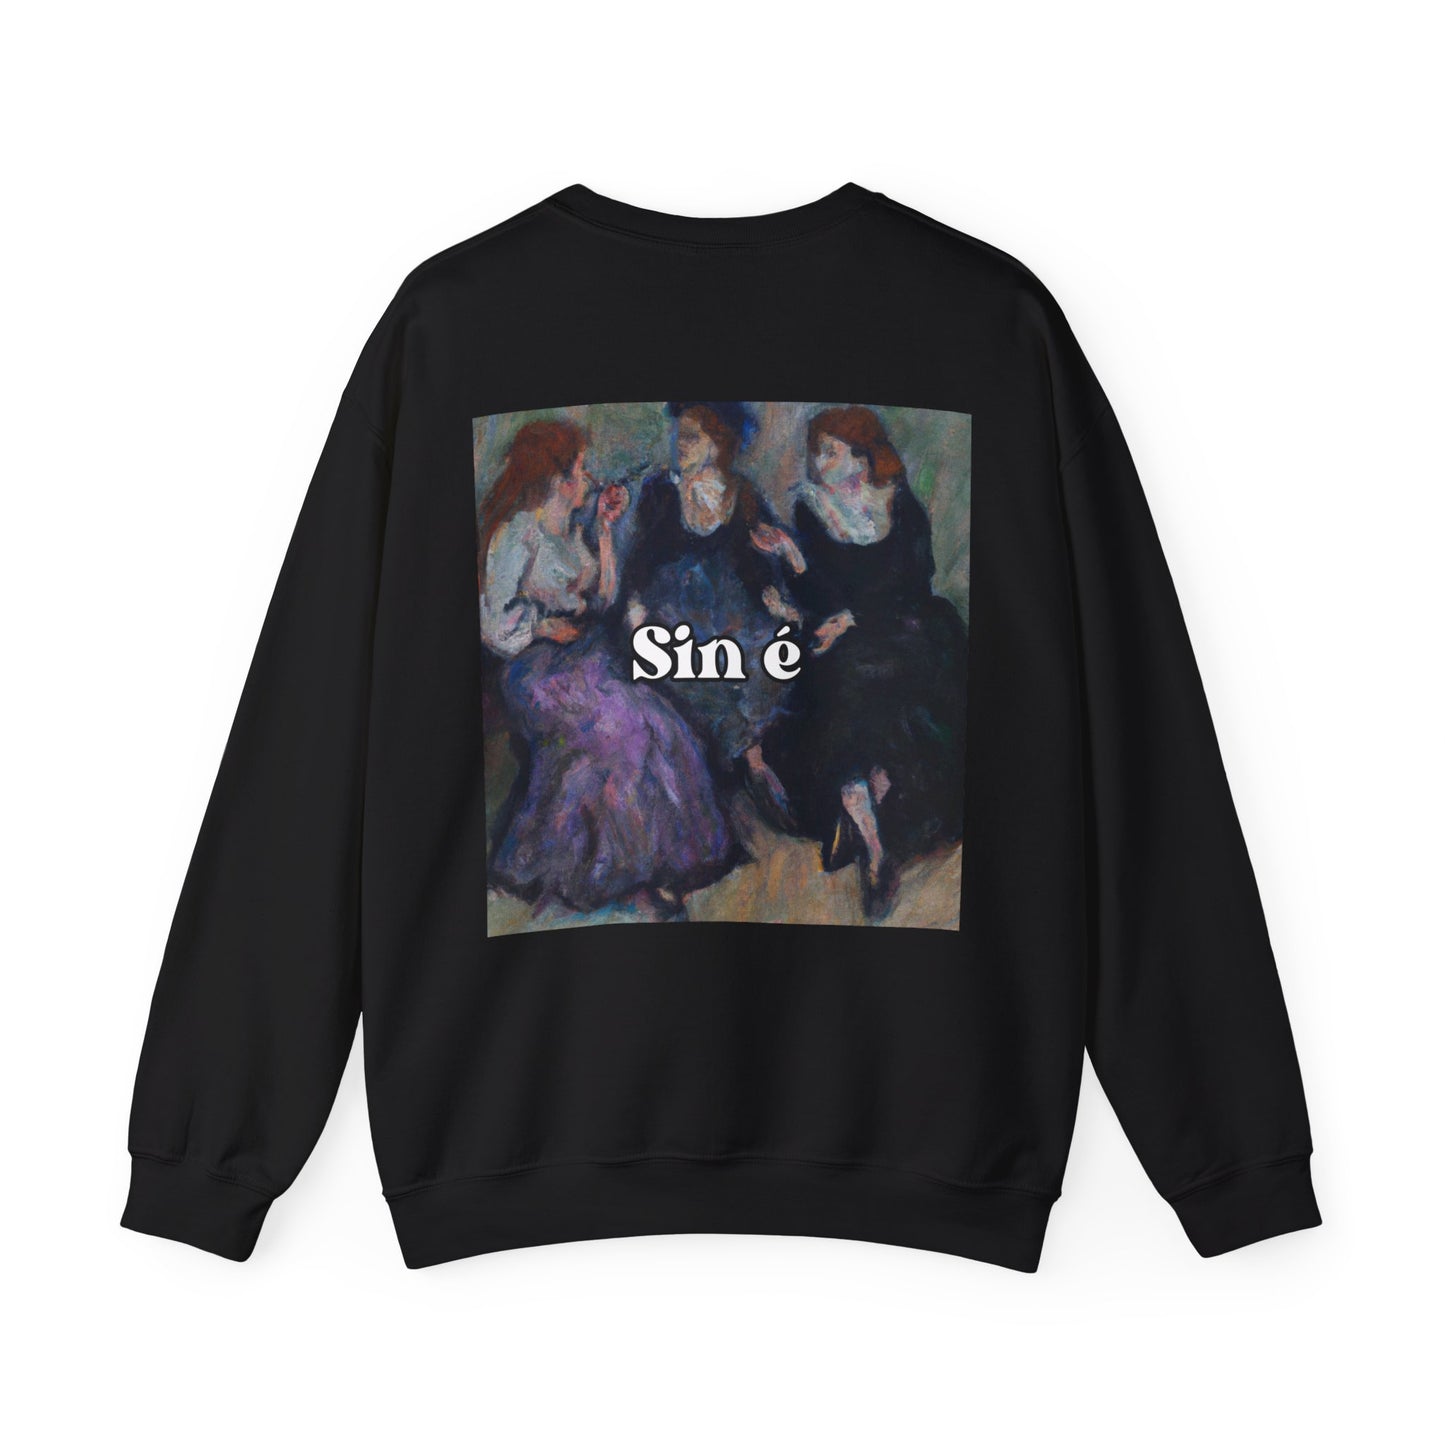 Sin é - sweatshirt x Sarah Words Collection